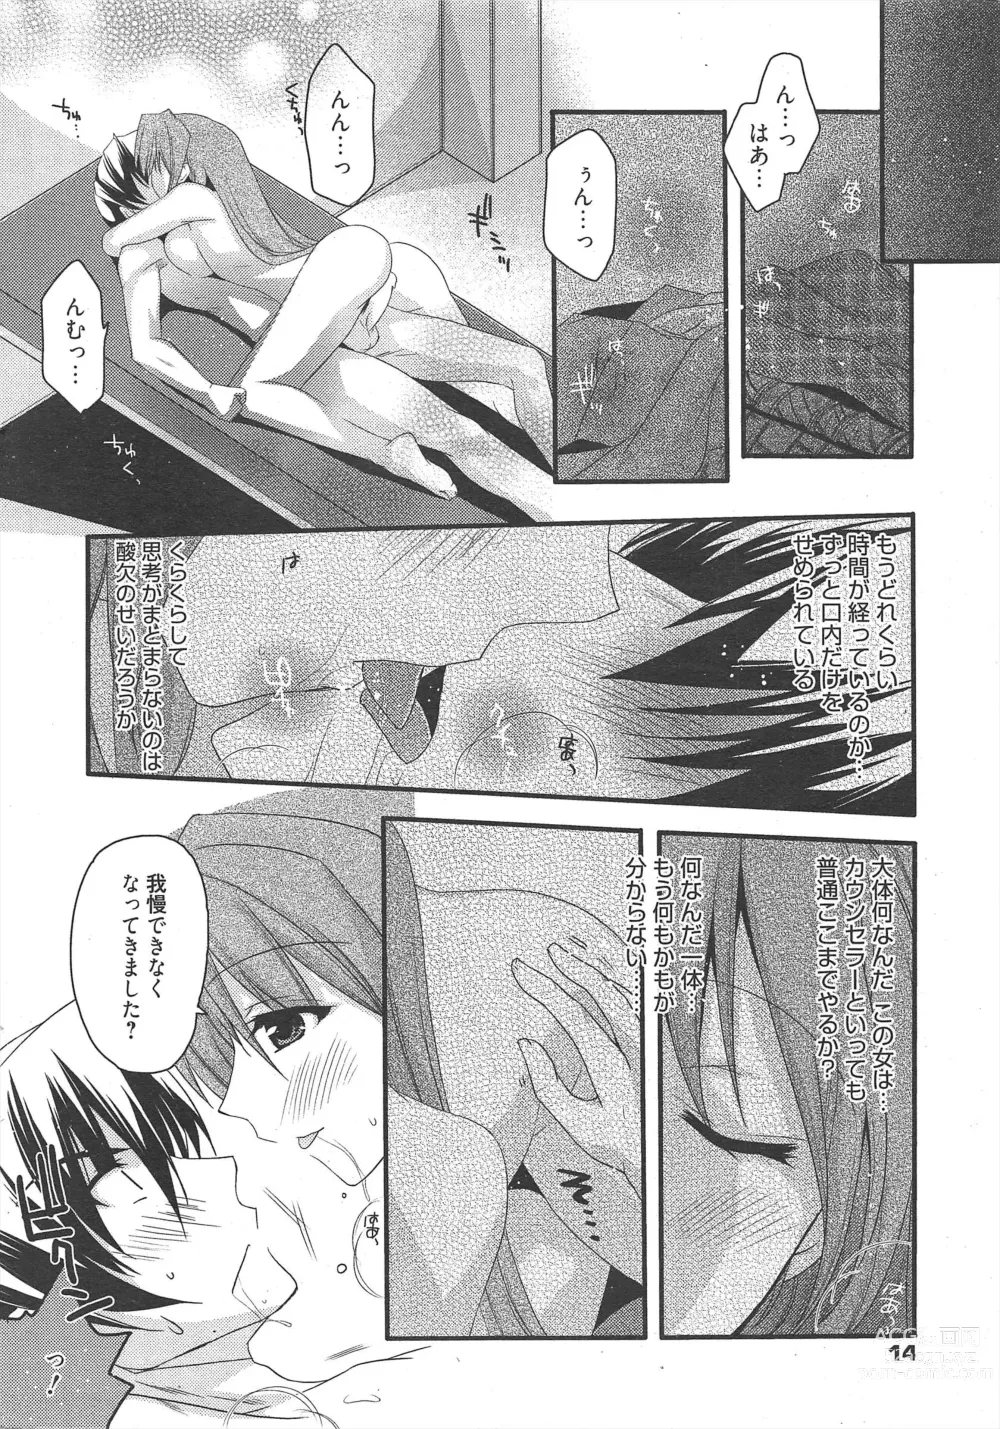 Page 13 of manga Manga Bangaichi 2011-06